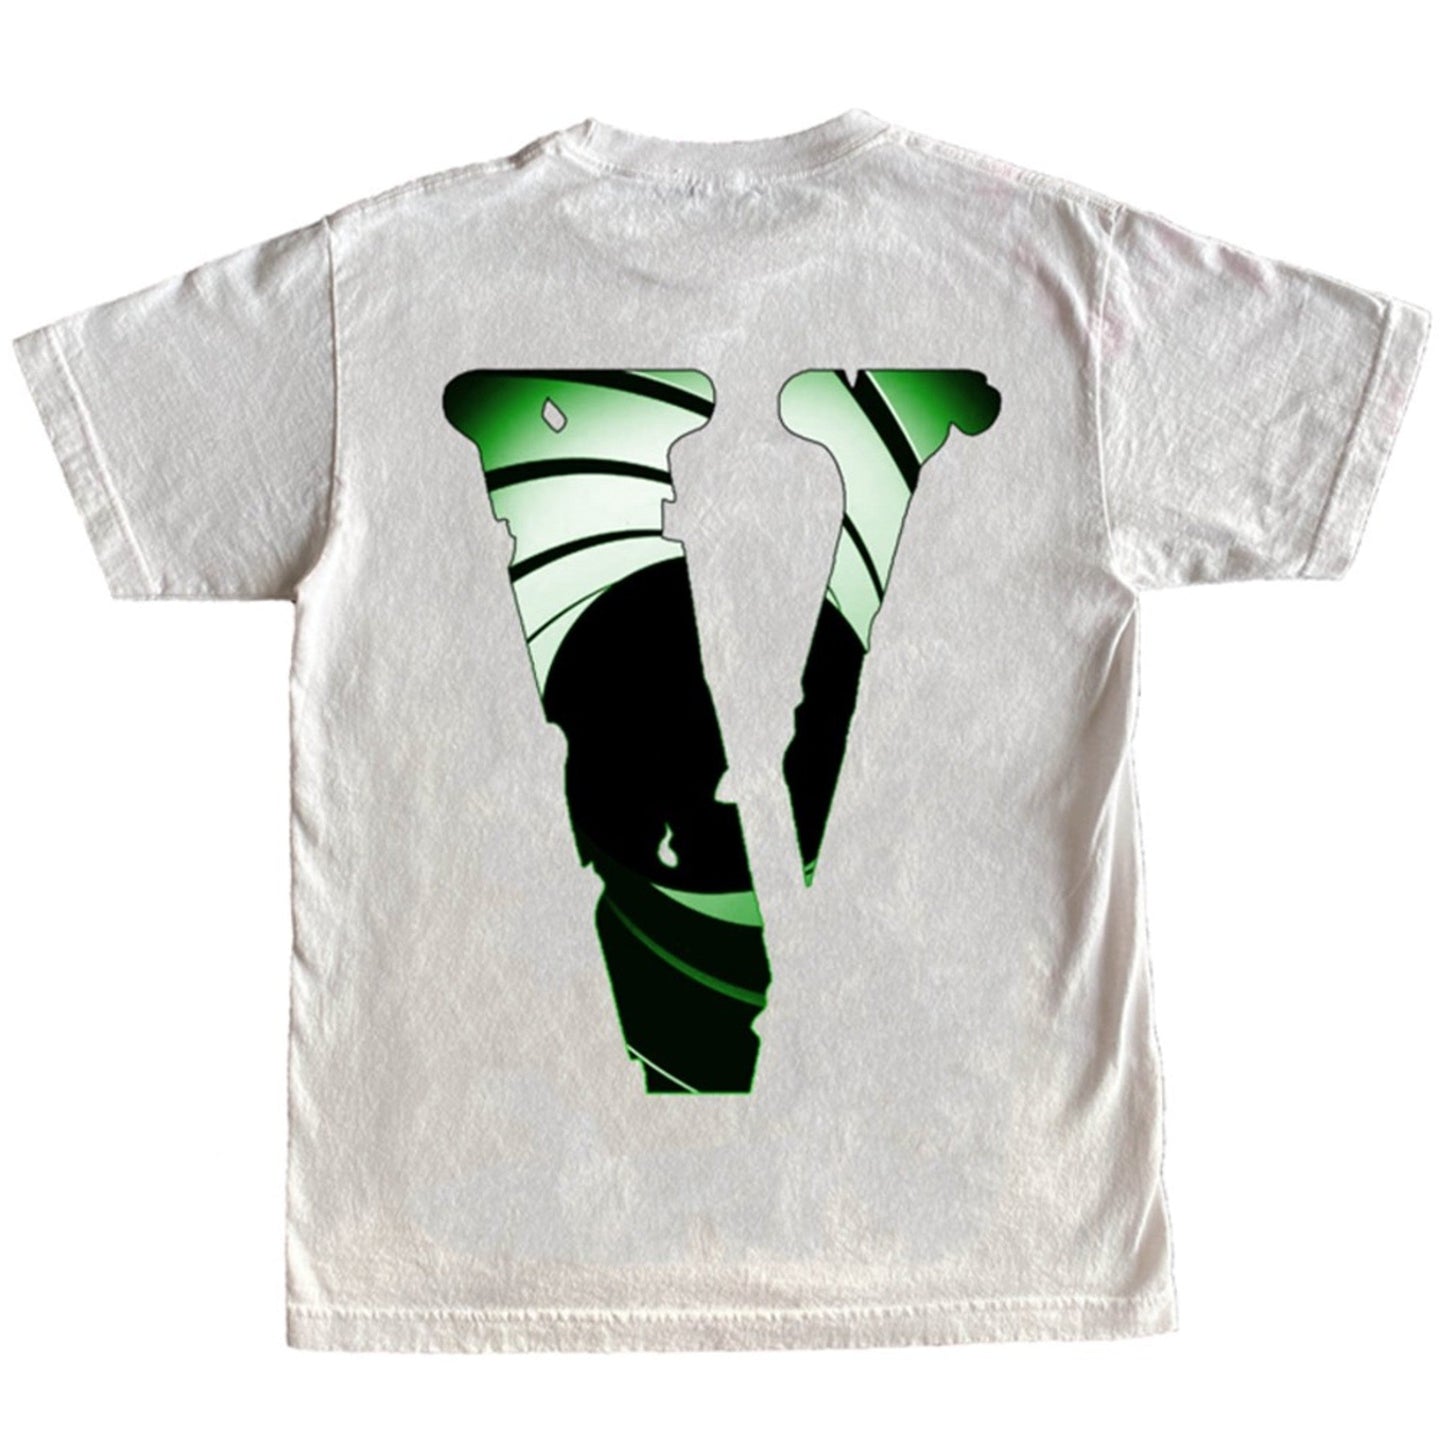 Vlone - Juice World Double Agent T-Shirt - White - Clique Apparel